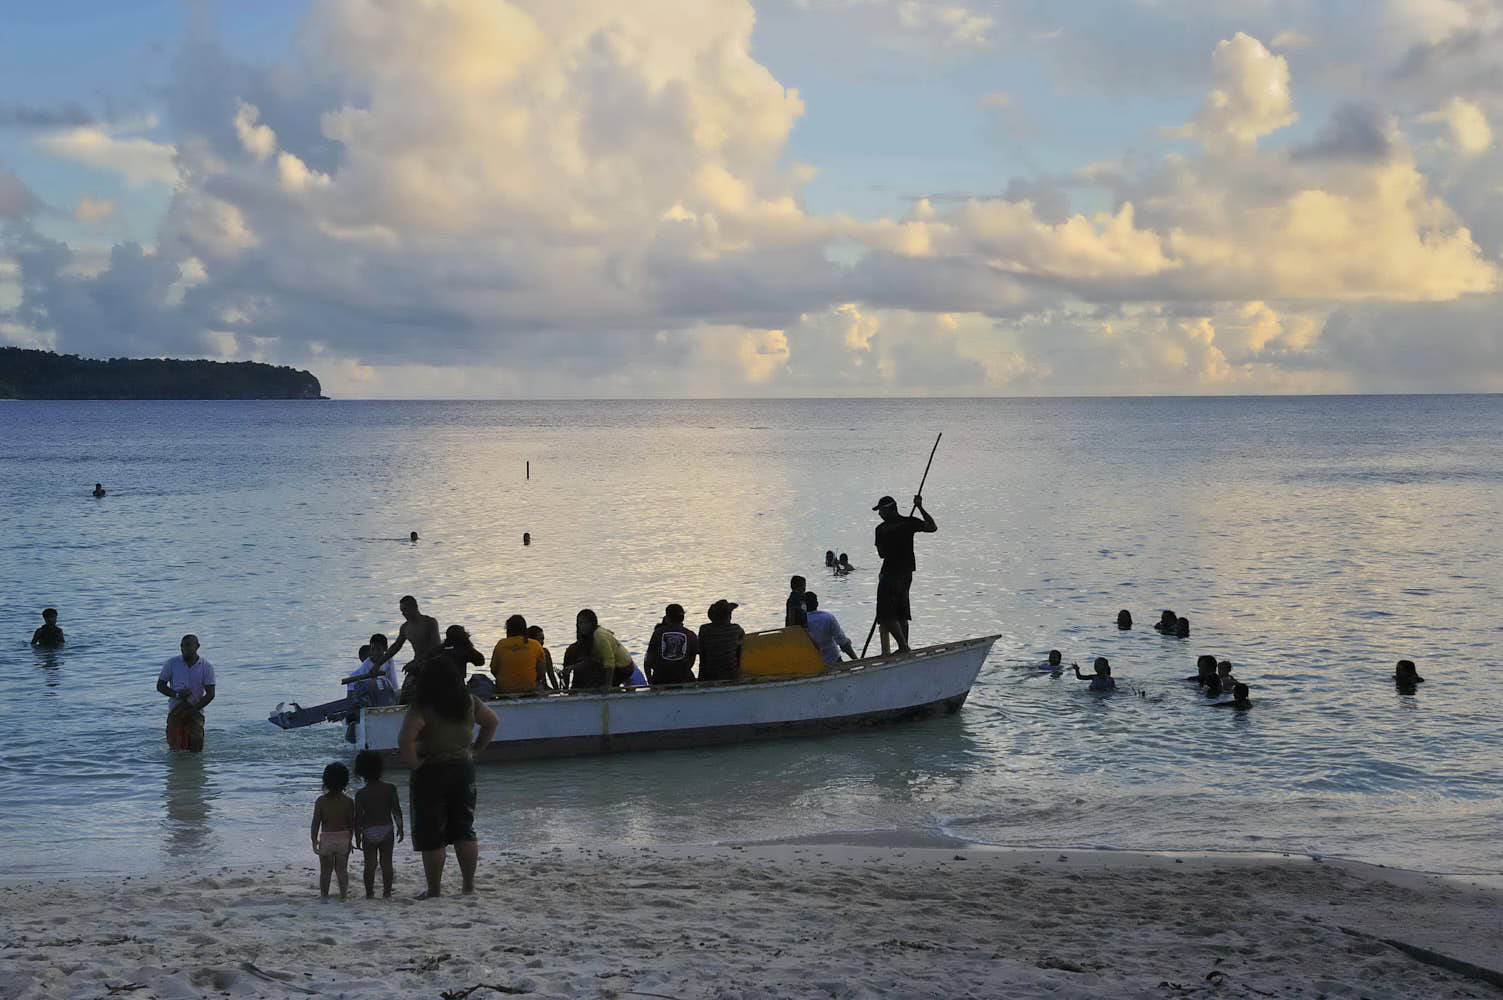 Baigande et bateaux sur la plage de Vélé en face de l'île d'Alofi, royaume d'Alo, reportage photographique sur l'île de Futuna, collectivité territoriale d'Outre Mer de Wallis et Futuna, Polynésie Occidentale, Océan Pacifique, février 2011